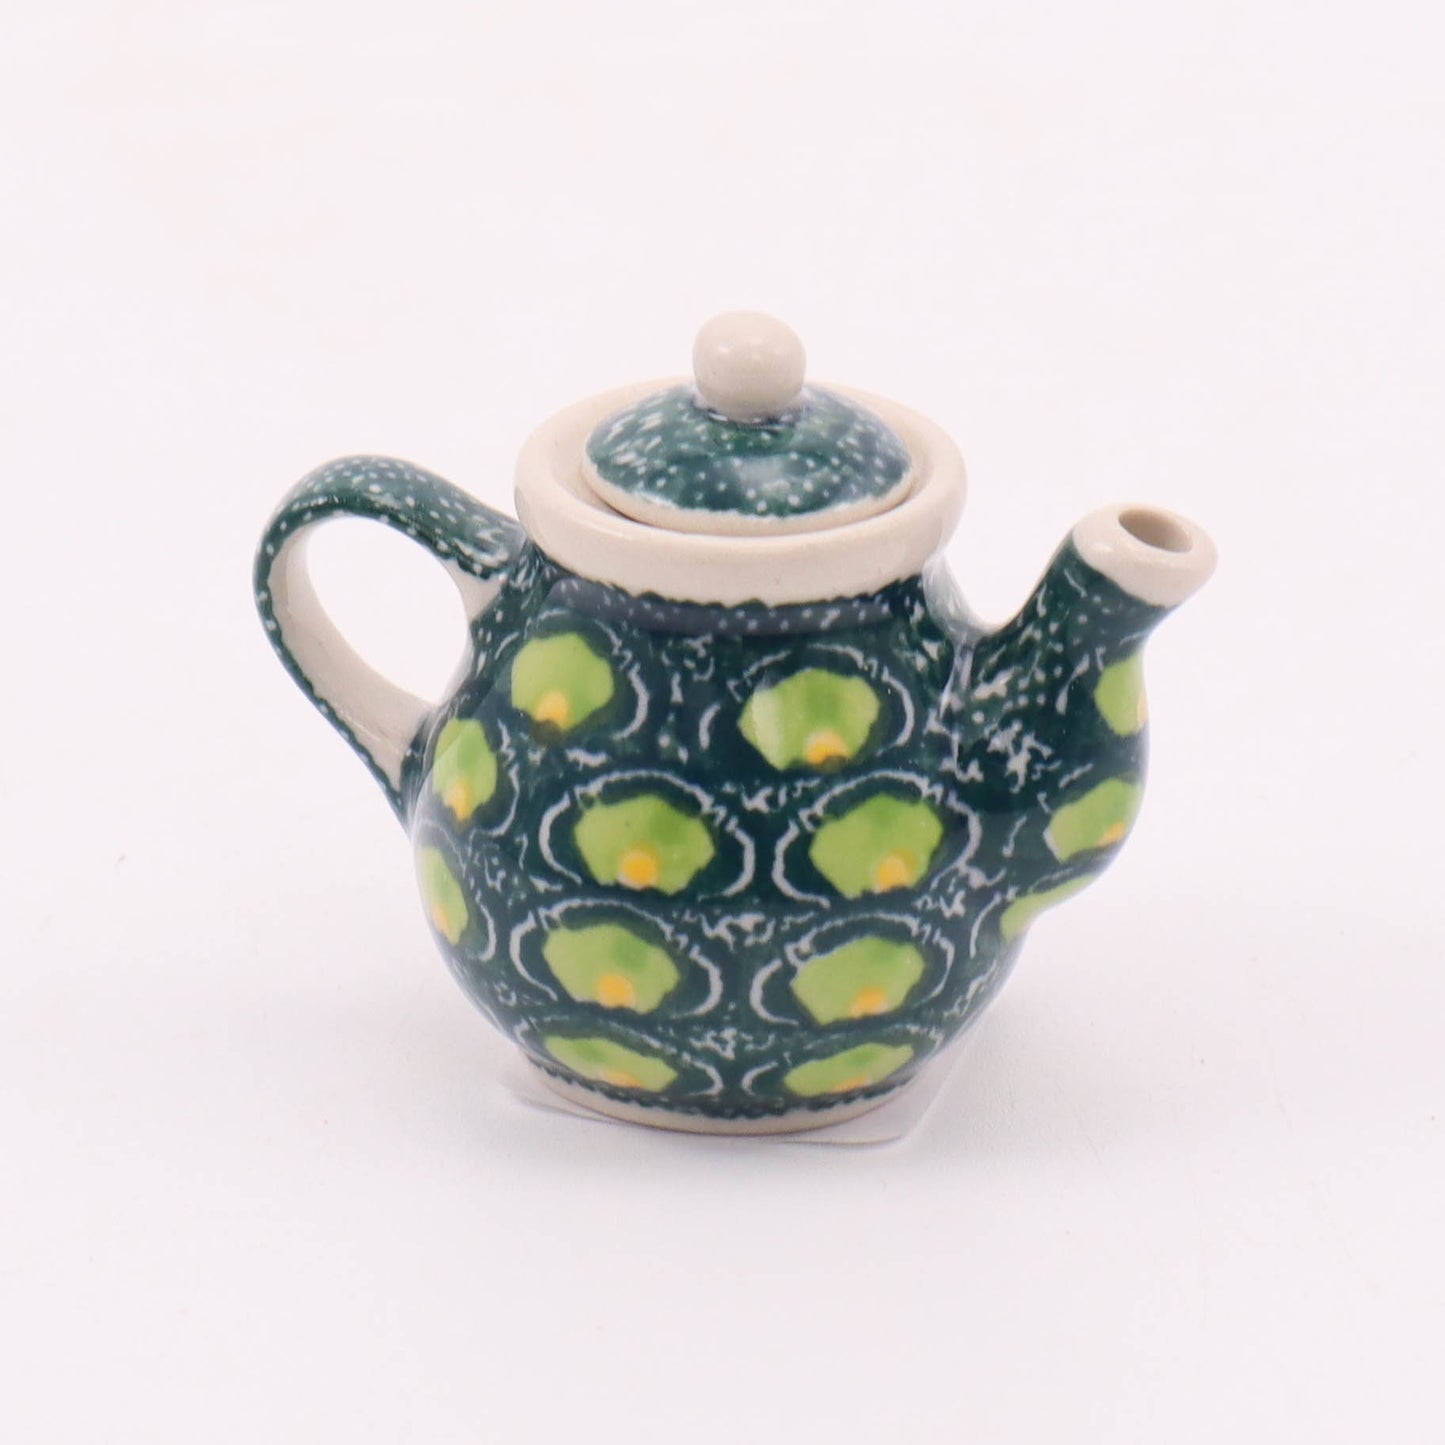 Mini Decorative Teapot. Pattern: Limelight